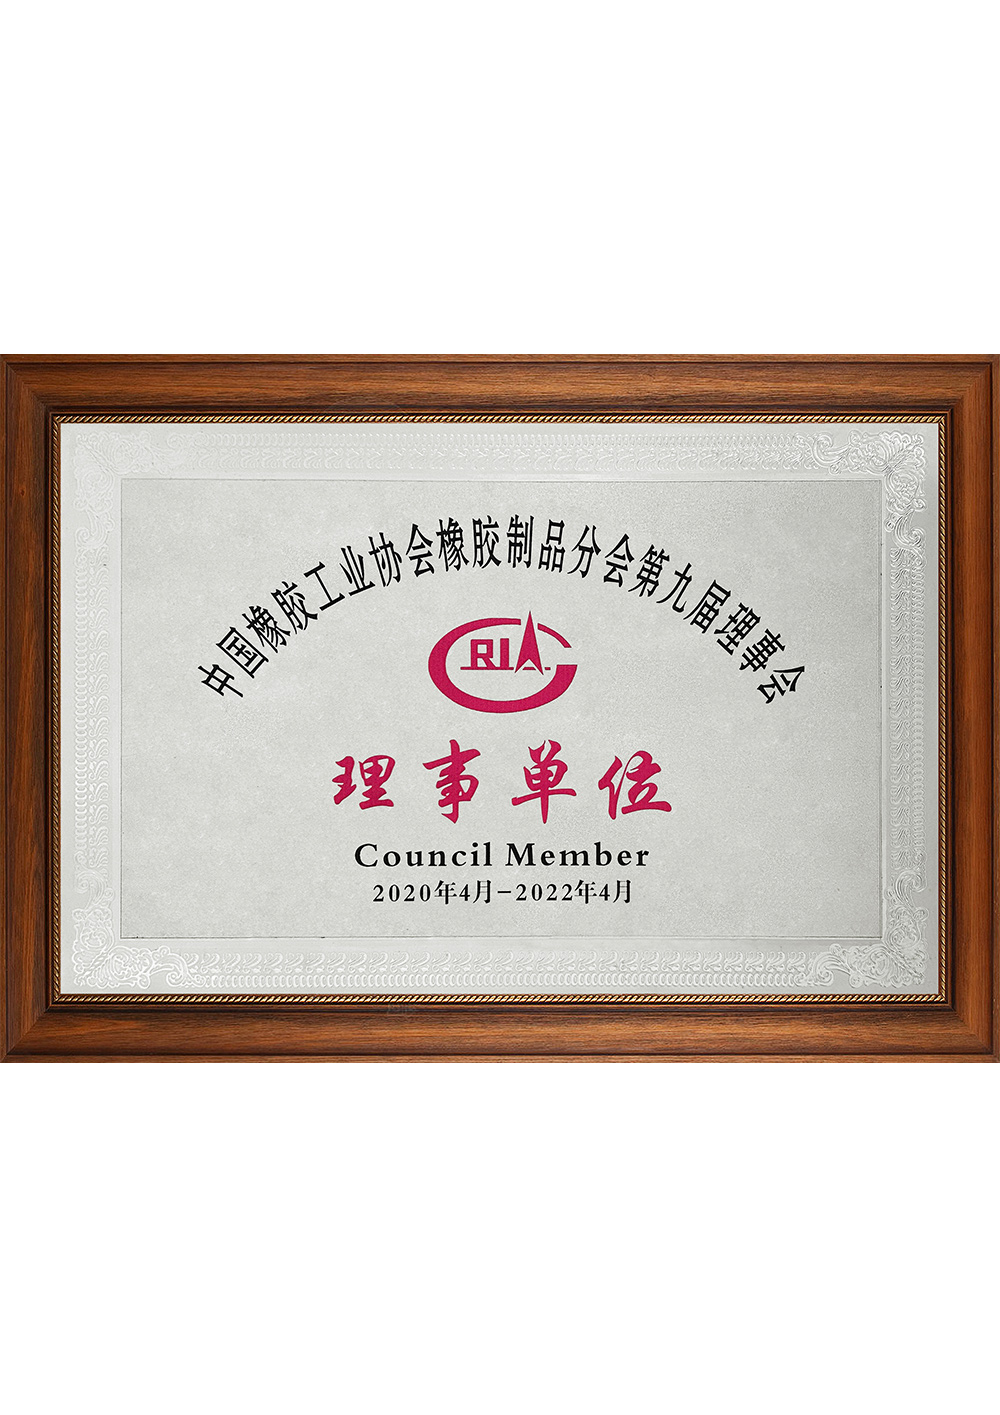 中国橡胶工业协会橡胶制品分会第九届理事会理事单位202004-202204